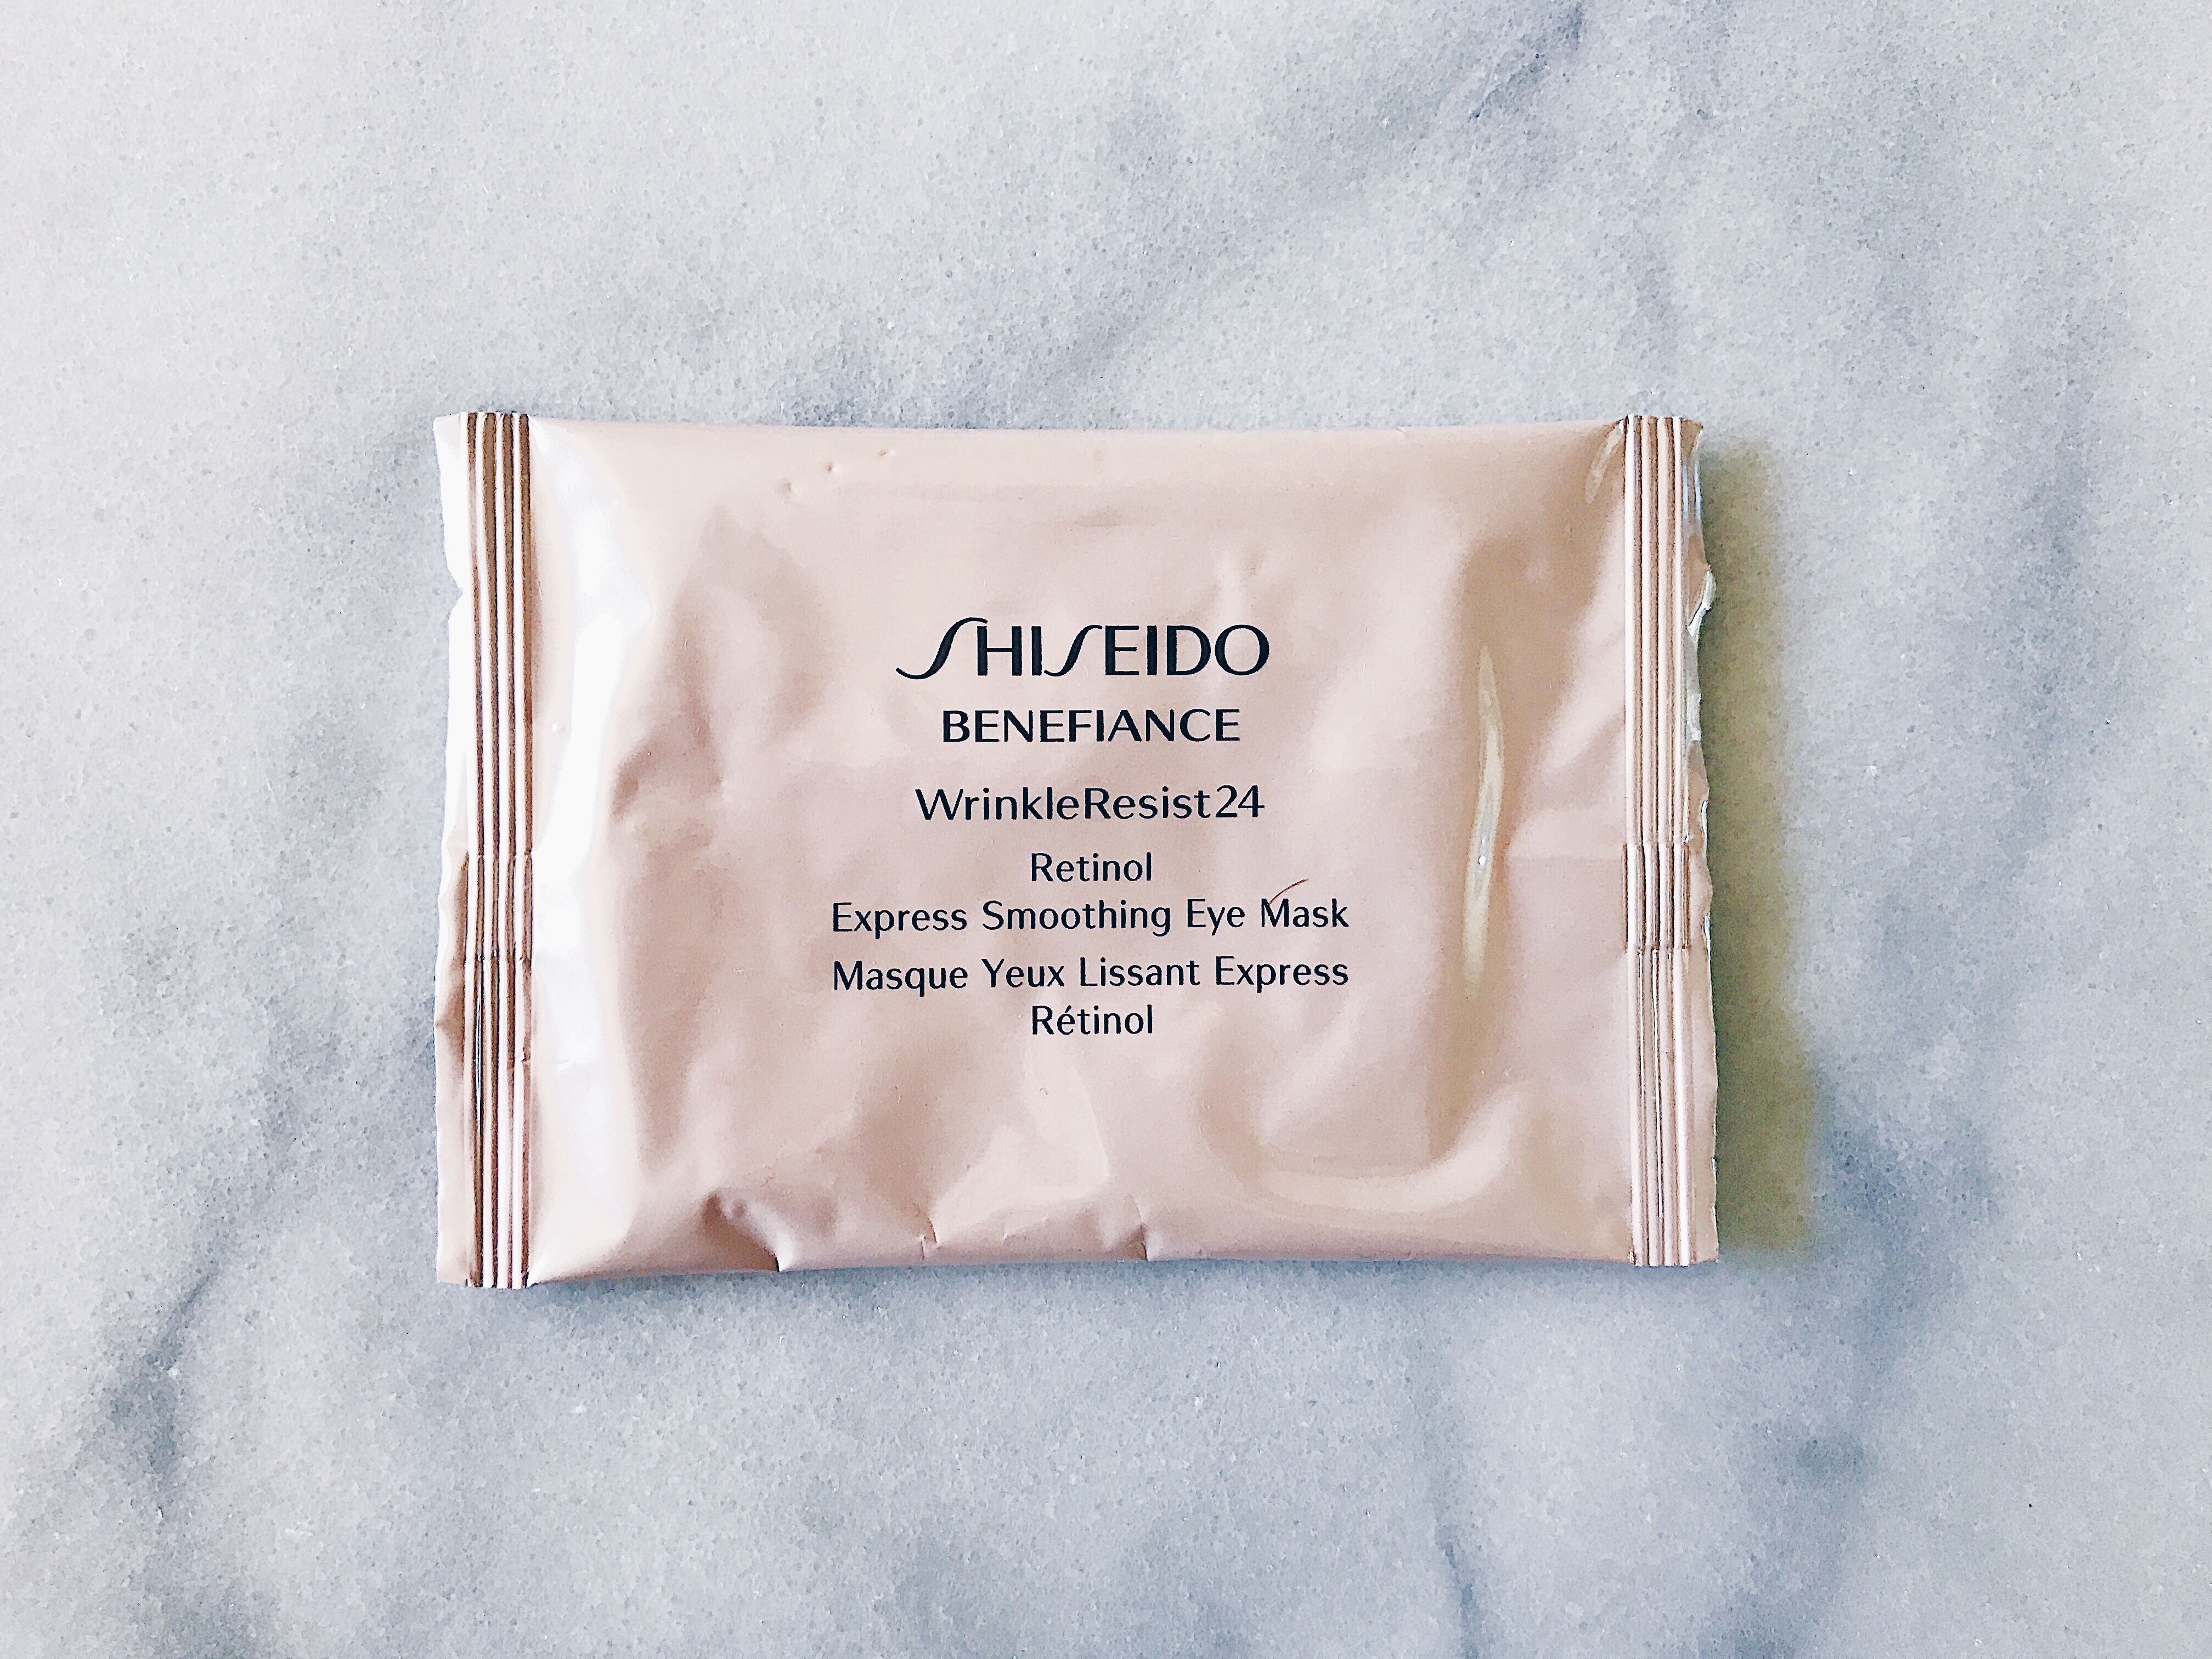 shiseido eye mask wrinkleresist 24 benefiance